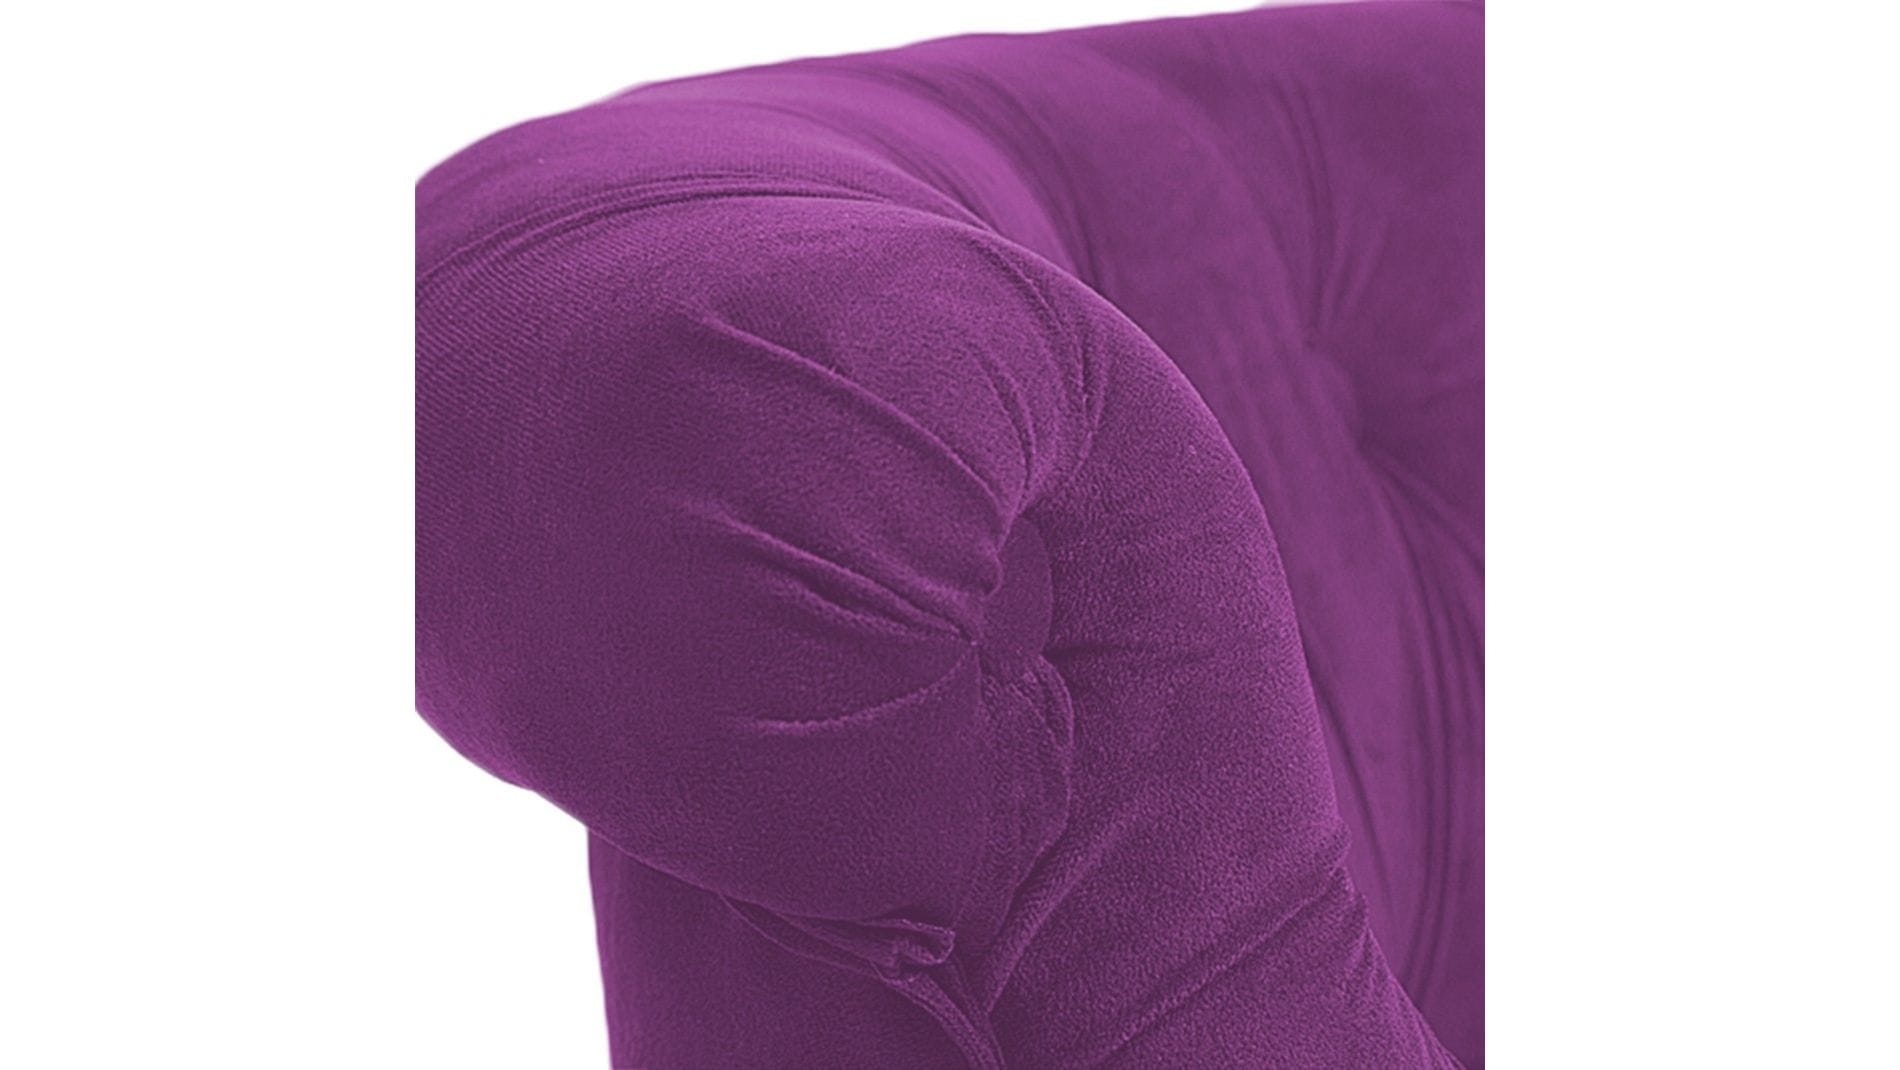 Кресло Amelie French Country Chair Фиолетовый Велюр М